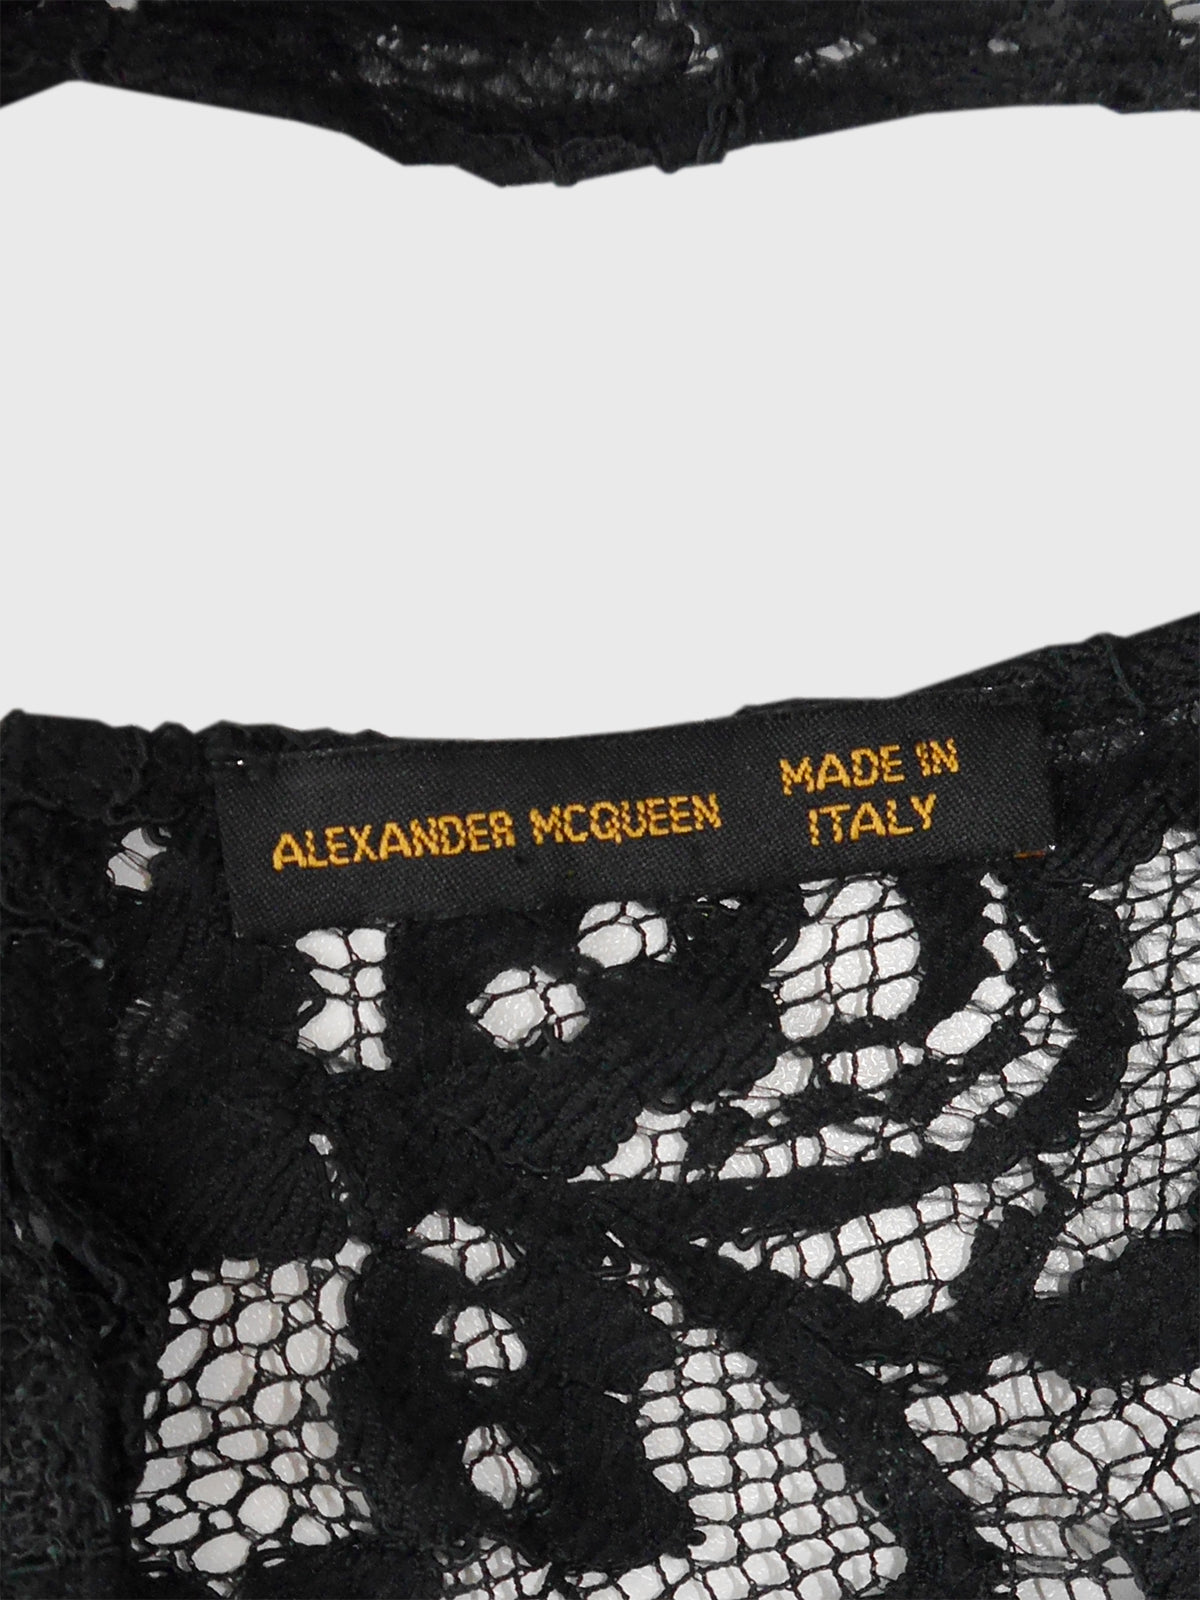 ALEXANDER MCQUEEN Spring 1999 Vintage Backless Halterneck Lace Dress w/ Belt